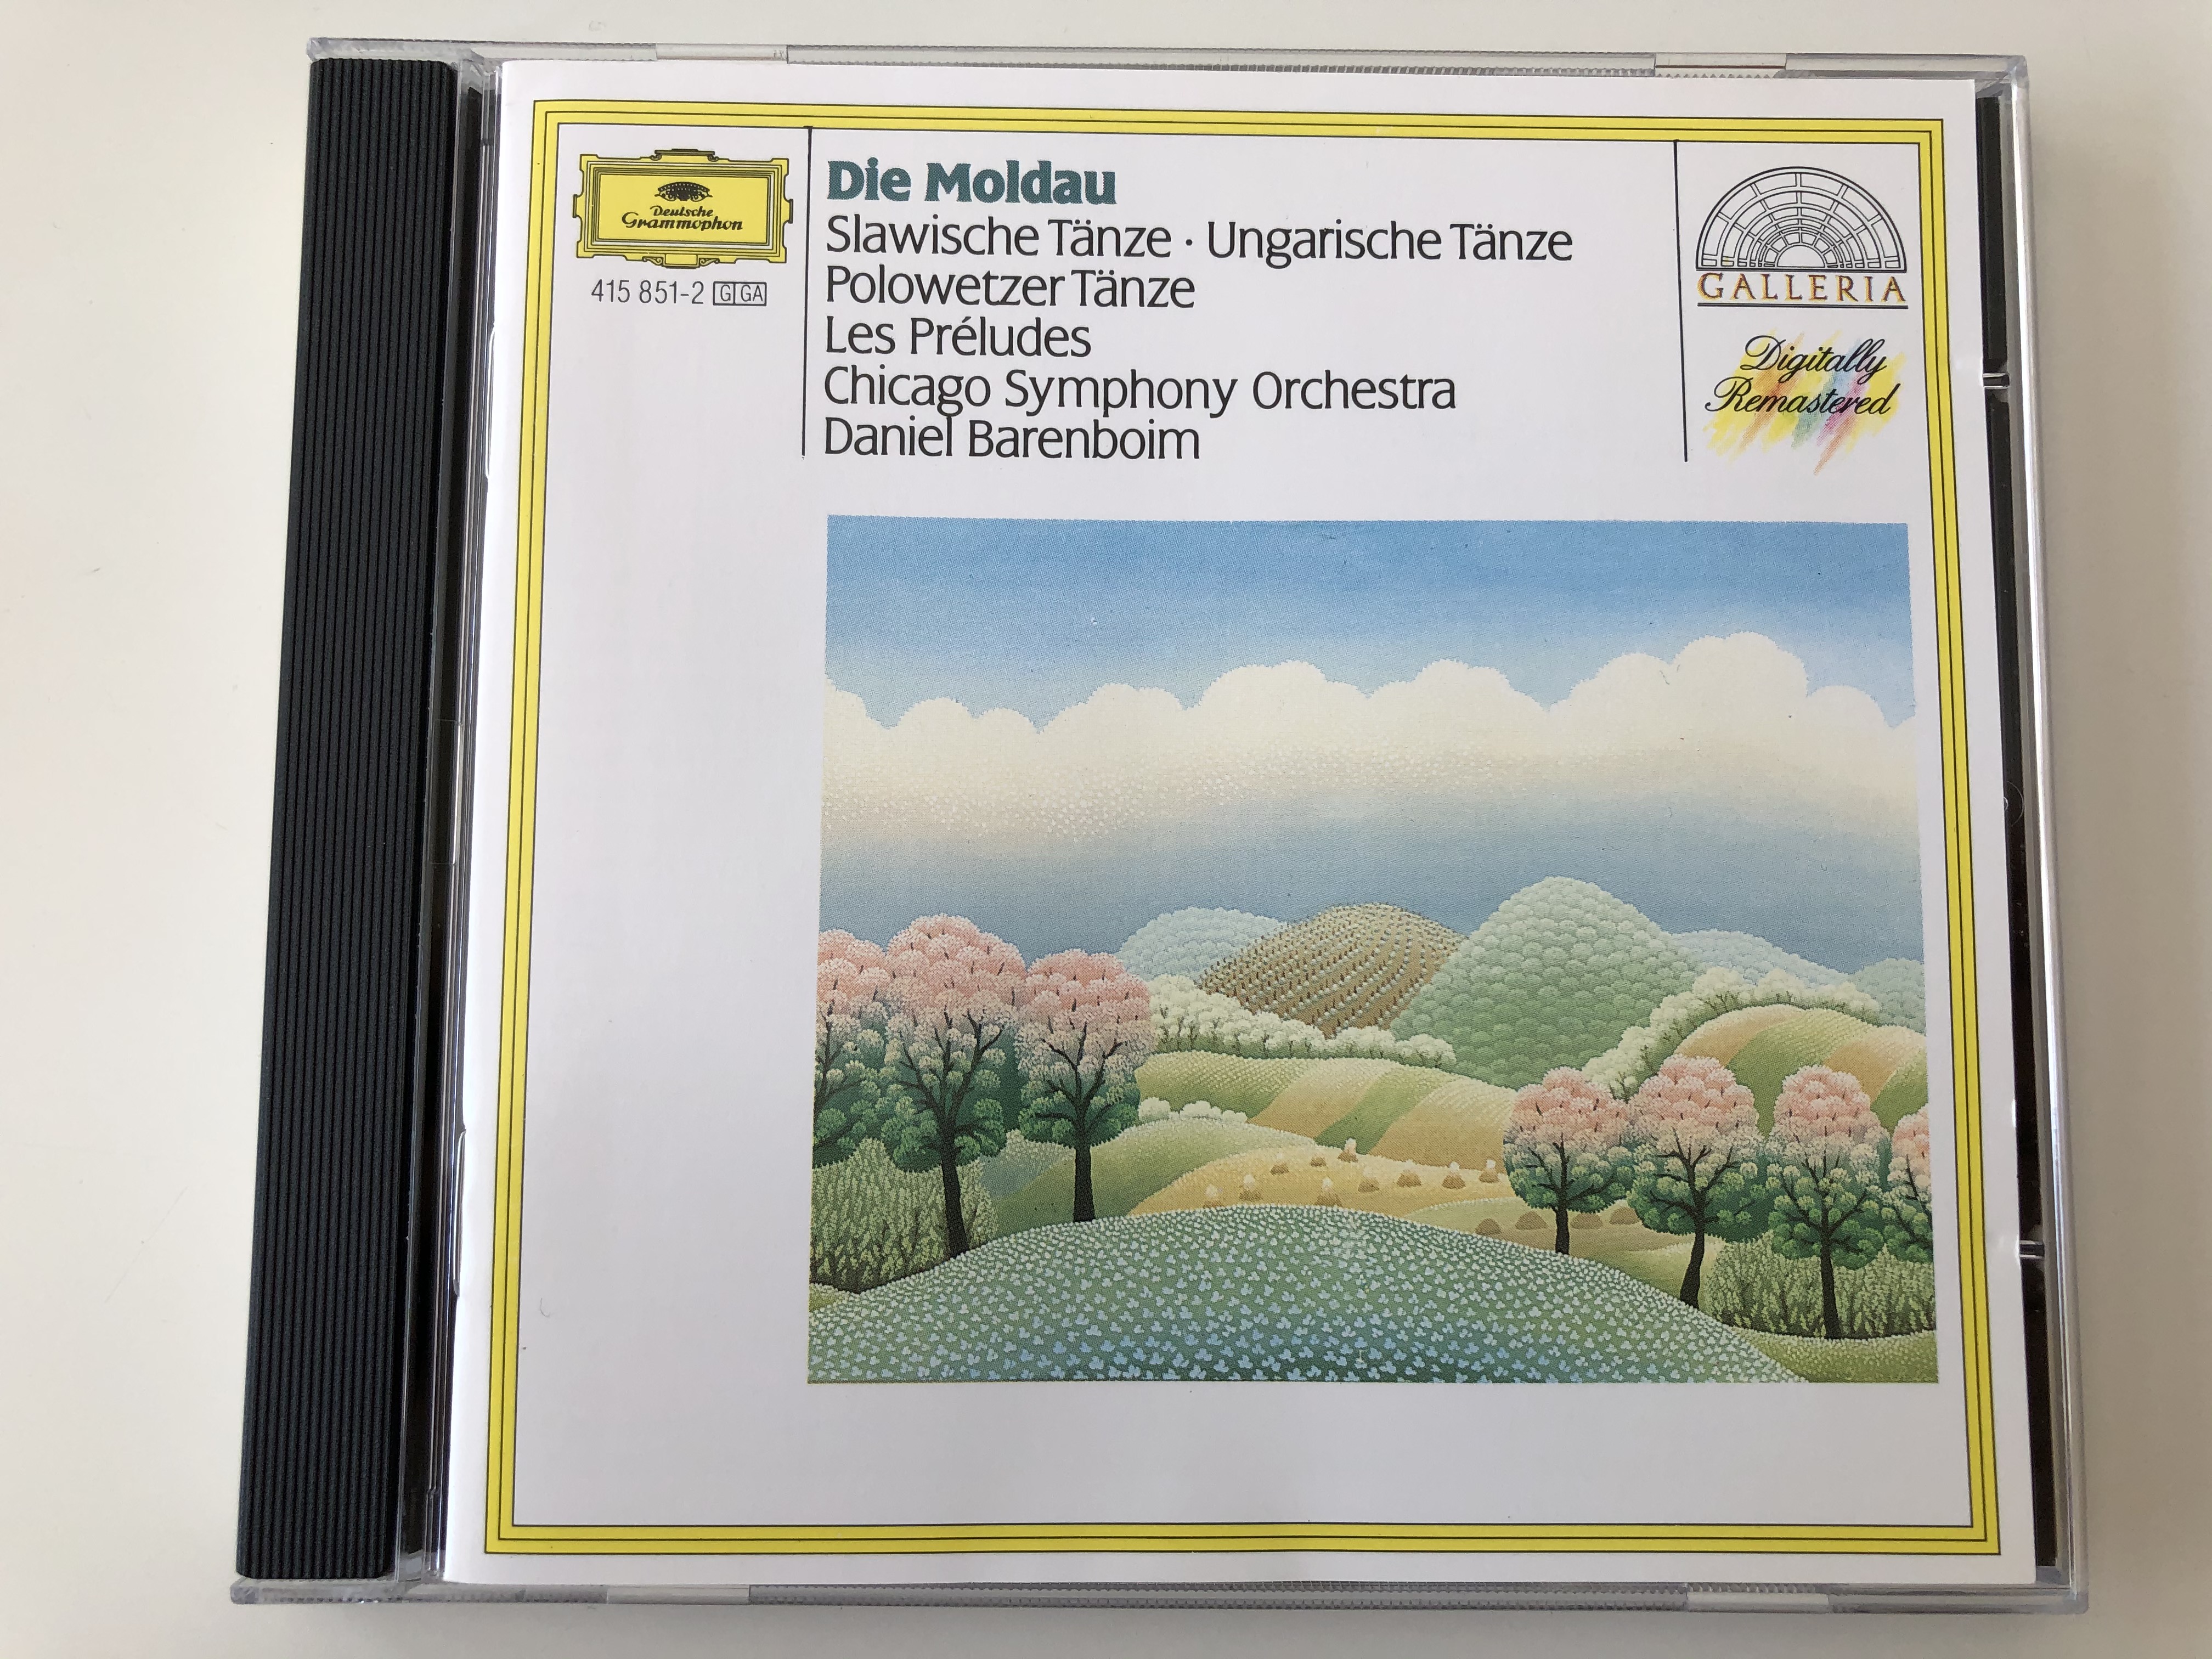 die-moldau-slawische-tanze-ungarische-tanze-polowetzer-tanze-les-preludes-chicago-symphony-orchestra-daniel-barenboim-deutsche-grammophon-audio-cd-stereo-415-851-2-1-.jpg